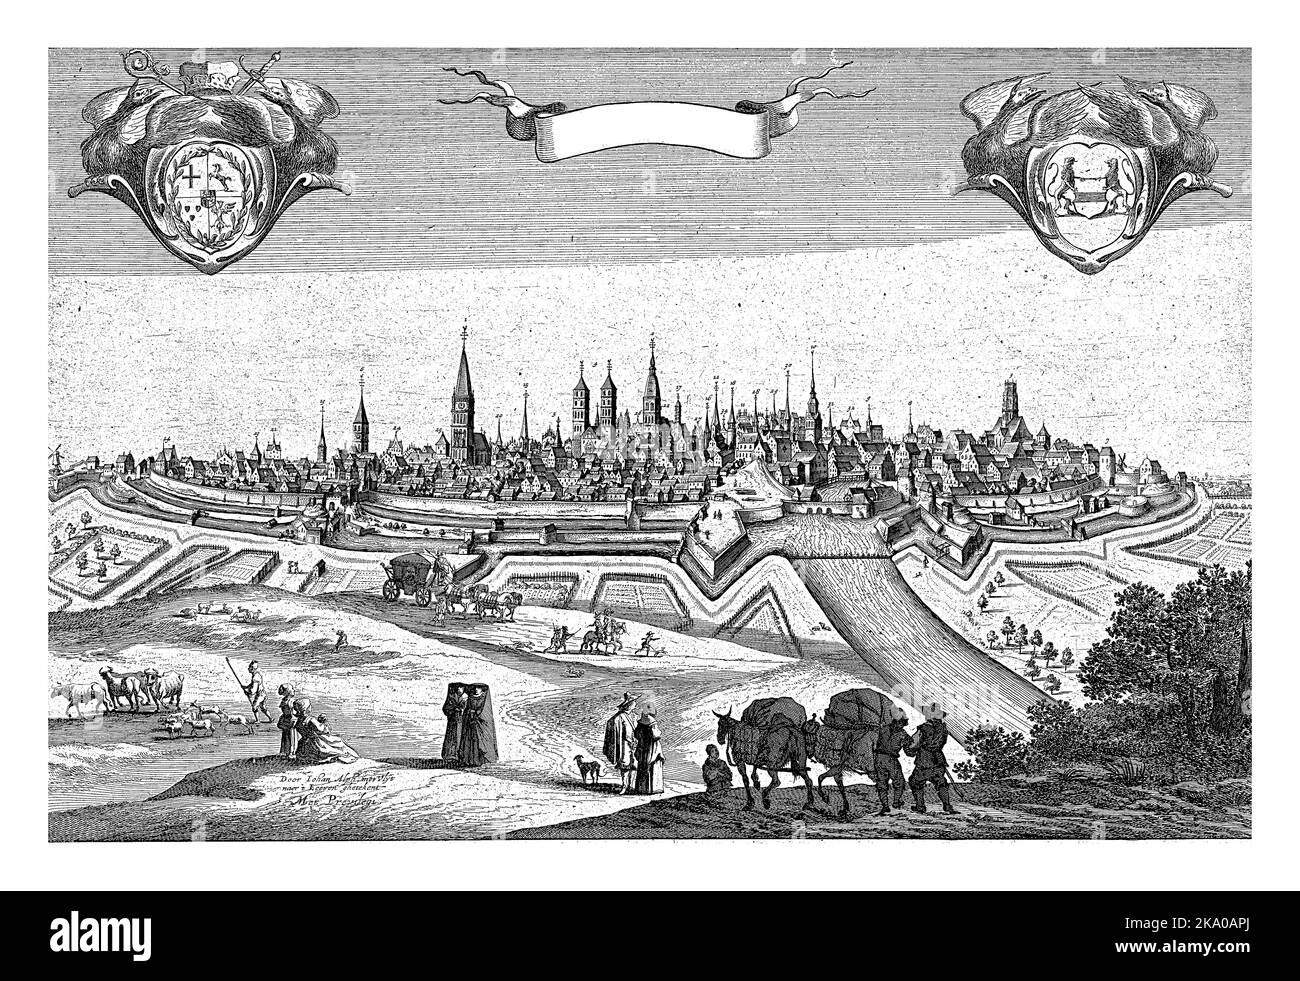 Blick auf die ummauerte Stadt Münster. Die Klöster und Kirchen sind nummeriert. Im Vordergrund in der Landschaft eine Pferdekutsche. Stockfoto